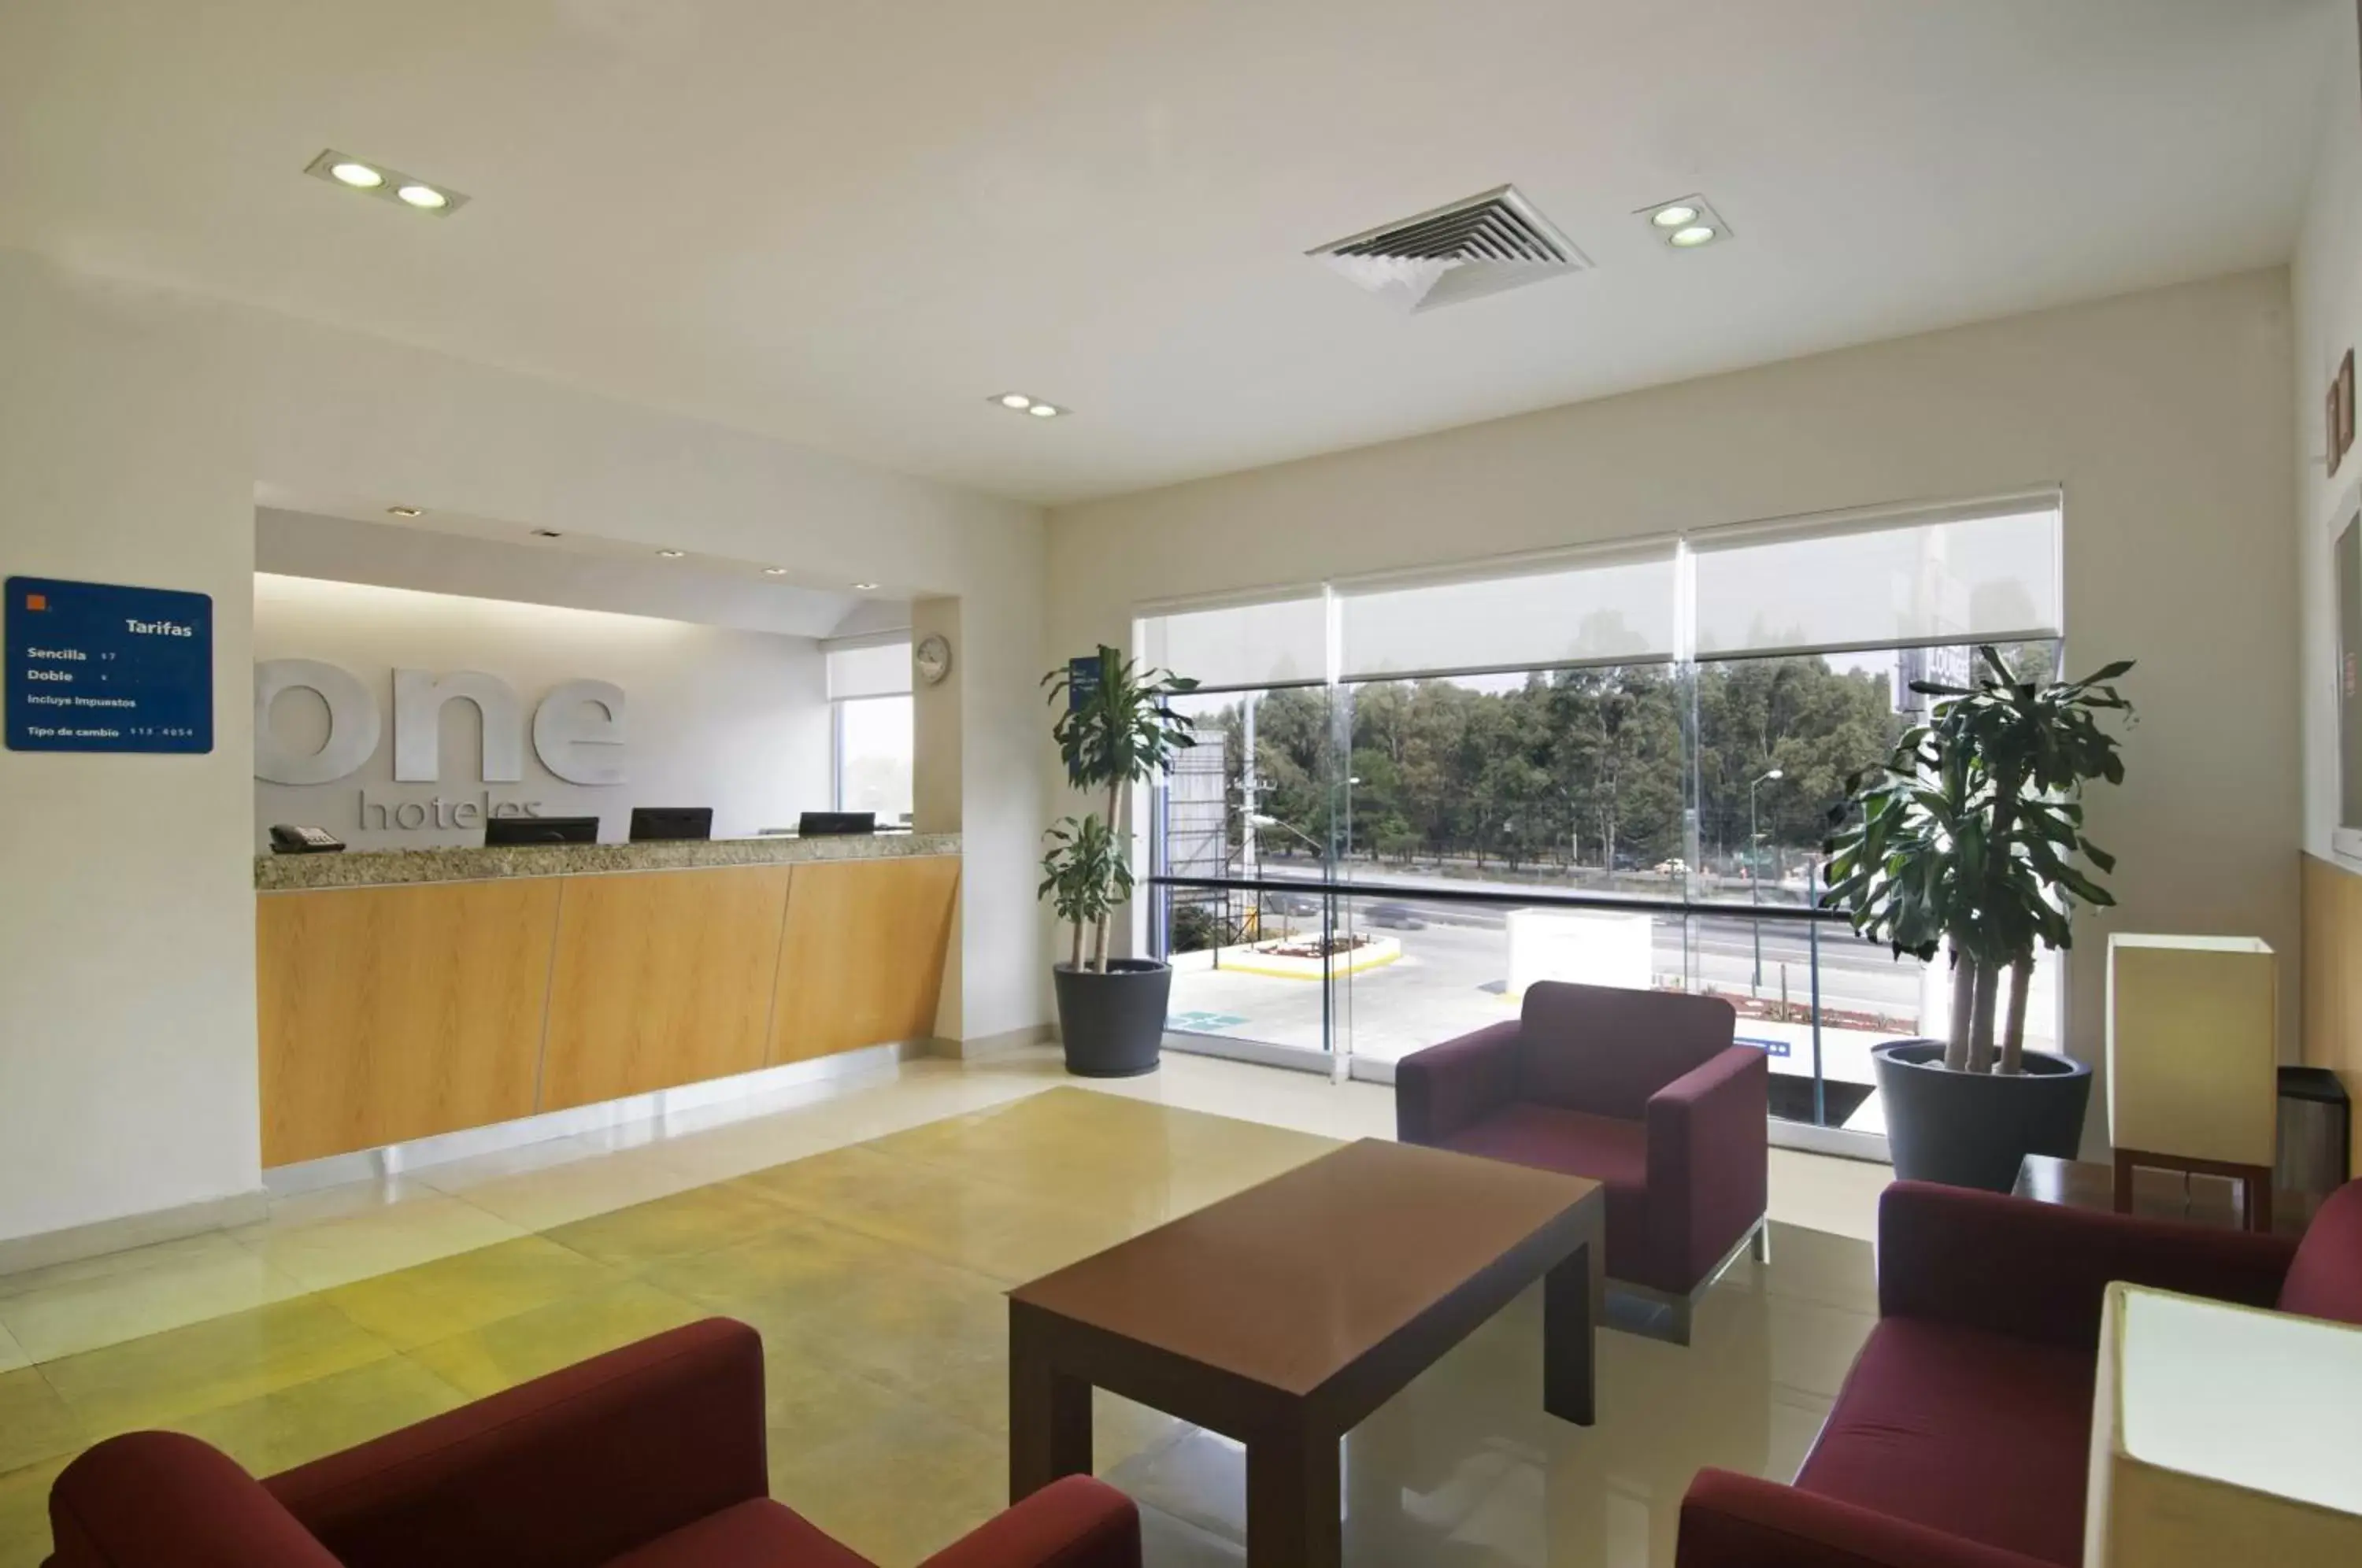 Lobby or reception, Lobby/Reception in One Puebla FINSA